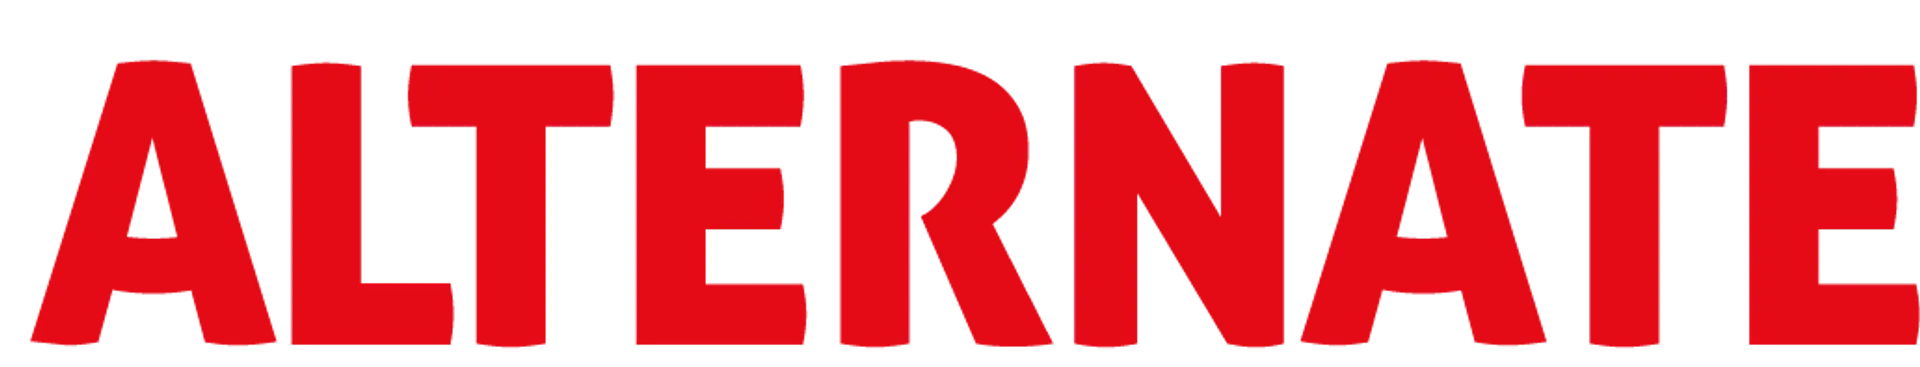 ALTERNATE logo